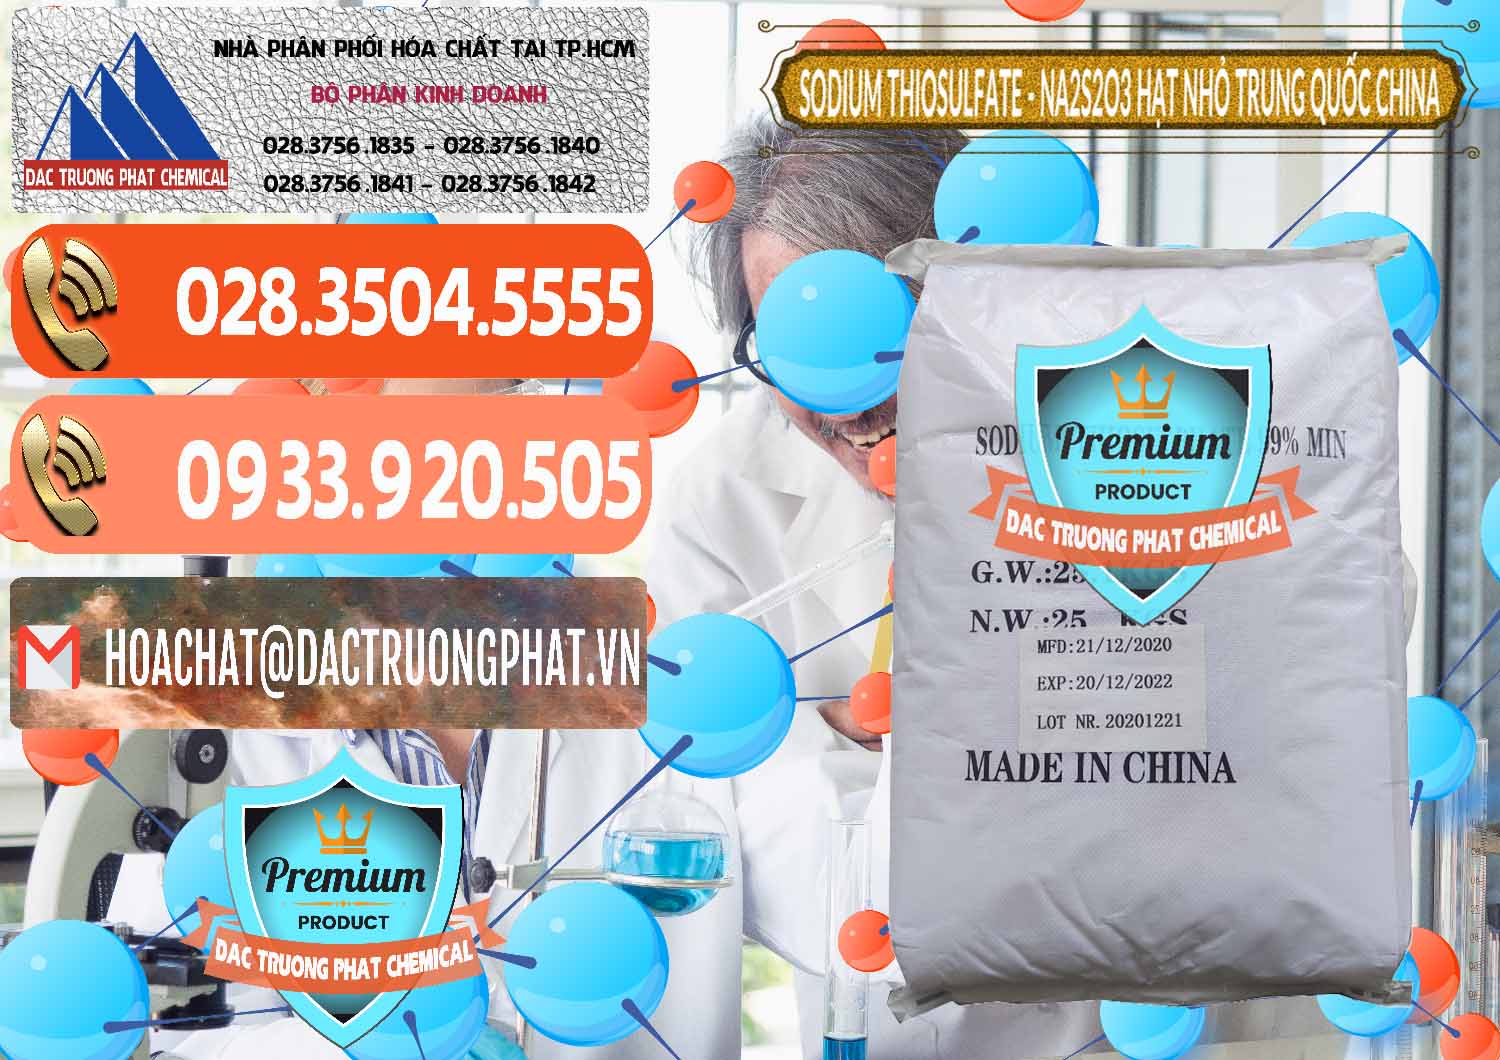 Cung cấp ( bán ) Sodium Thiosulfate - NA2S2O3 Hạt Nhỏ Trung Quốc China - 0204 - Nhập khẩu & phân phối hóa chất tại TP.HCM - hoachatmientay.com